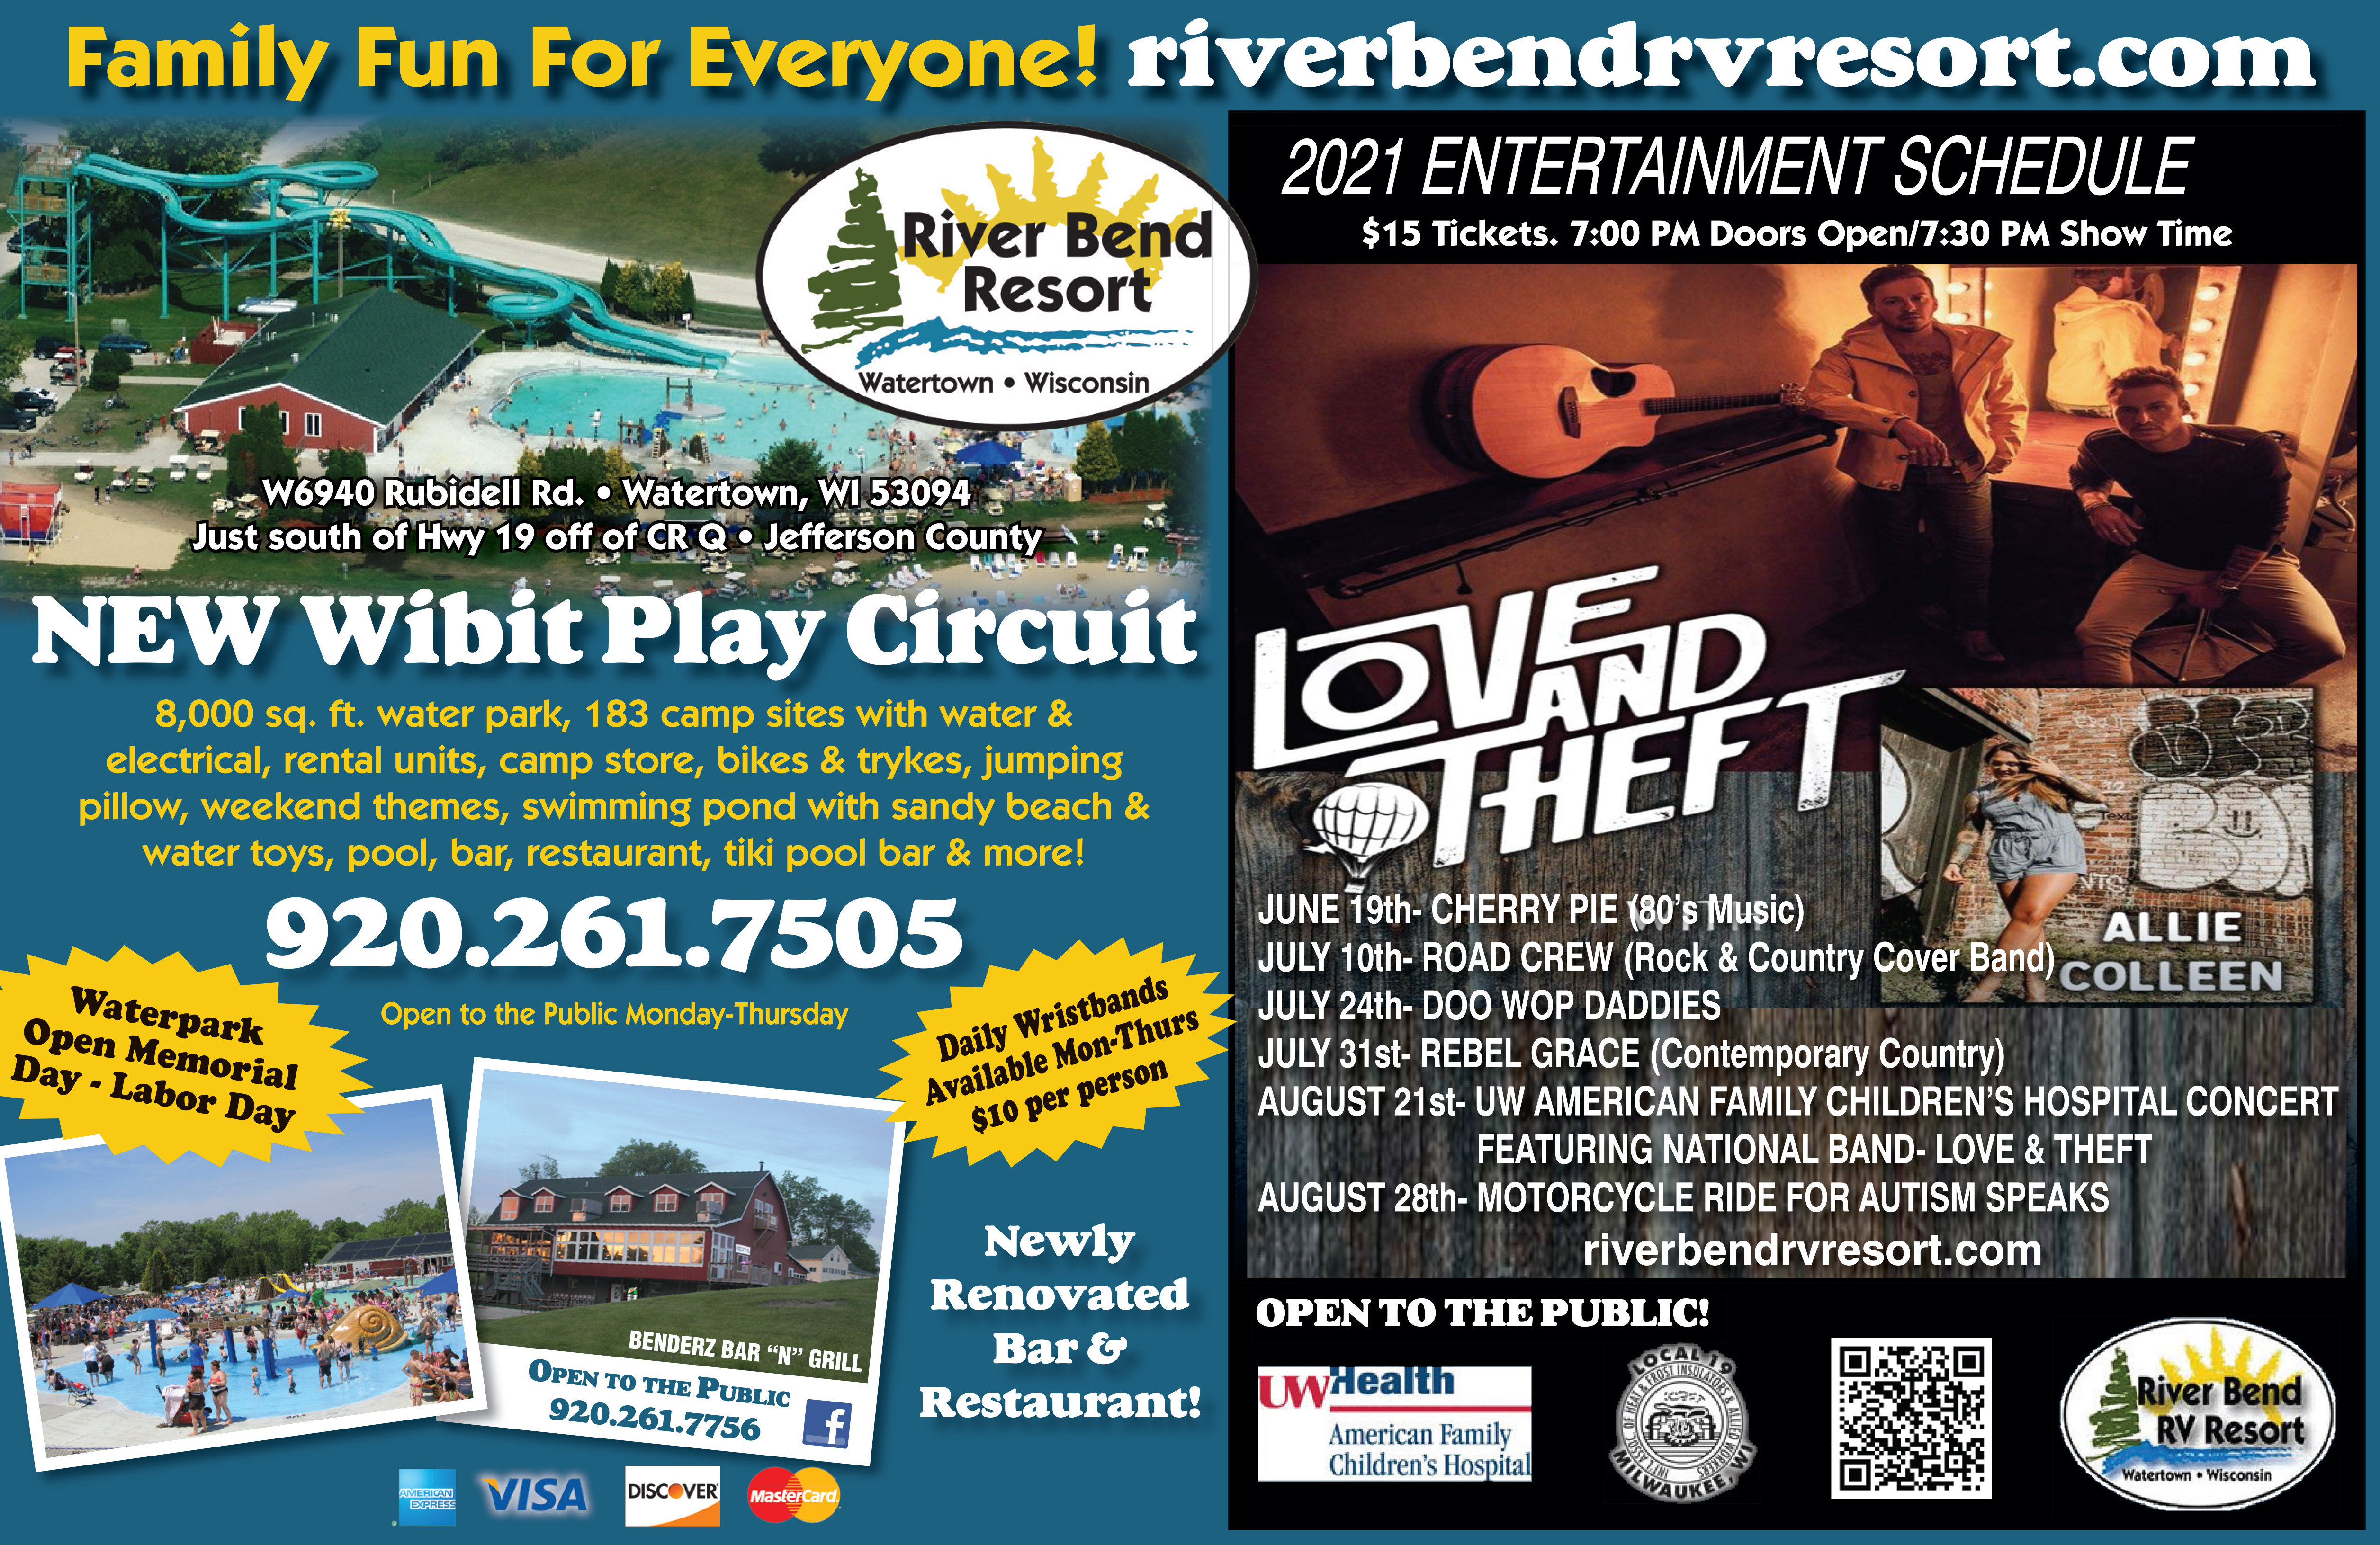 River Bend RV Resort